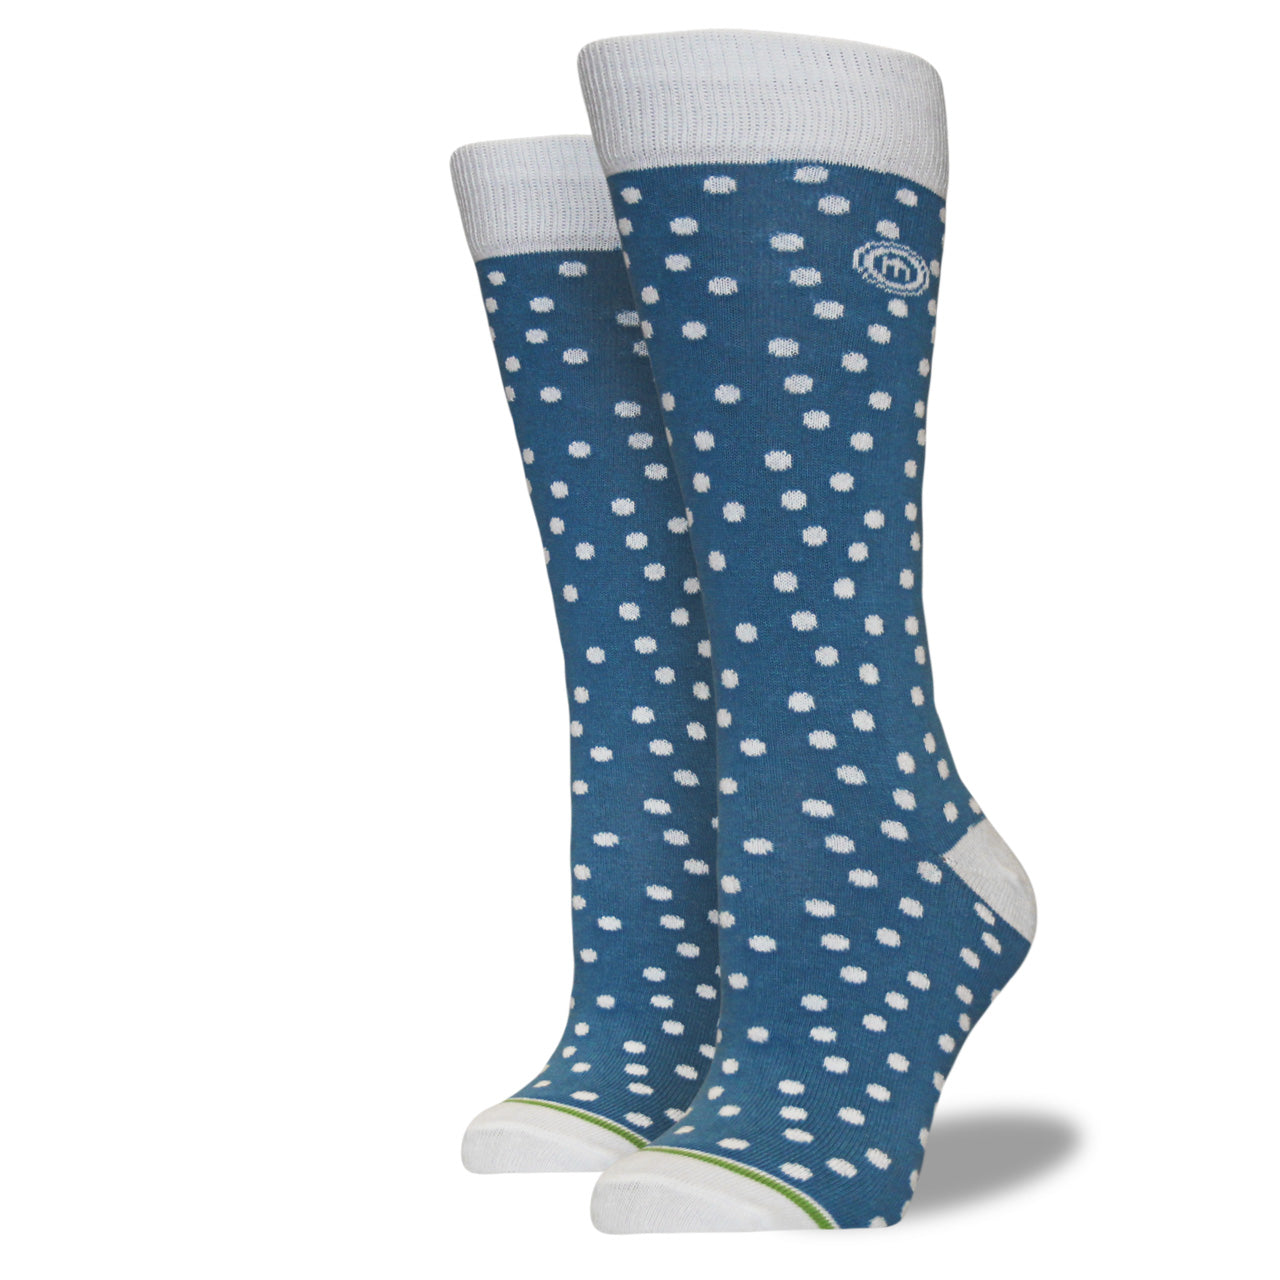 Women's Light Blue and White Polkadot Socks